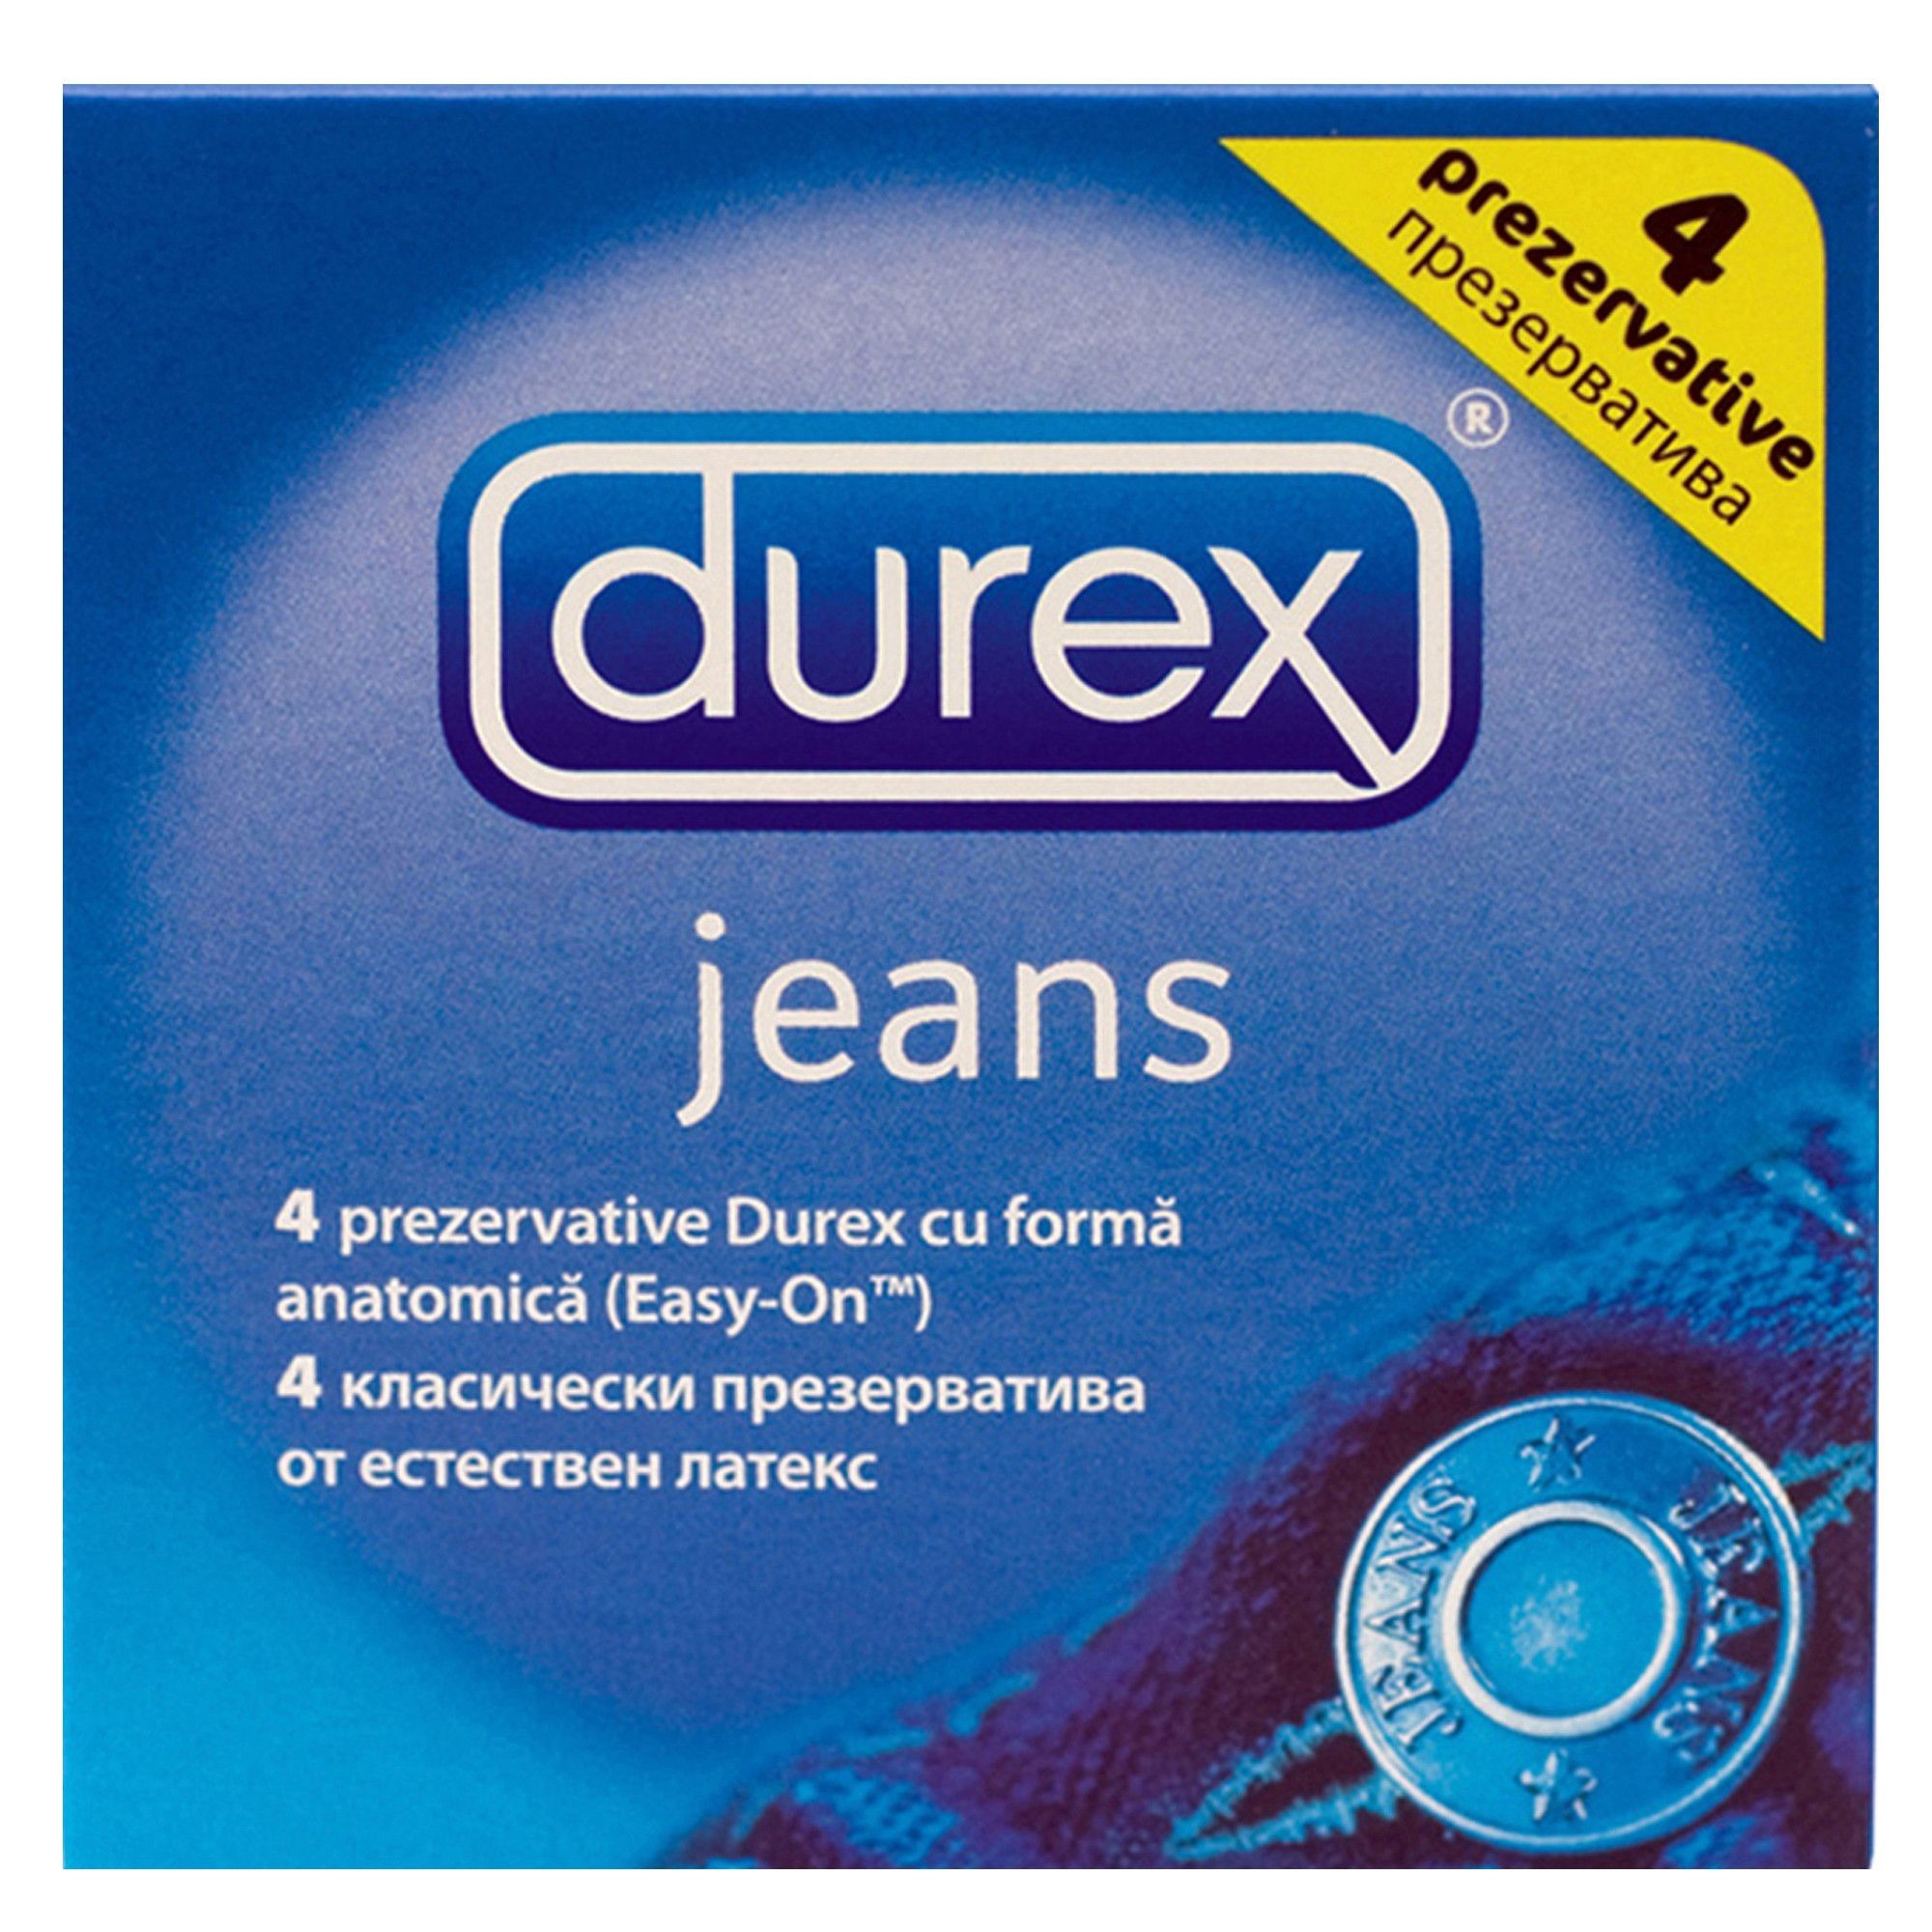 Contracepție - DUREX JEANS 3+1GRATIS, axafarm.ro